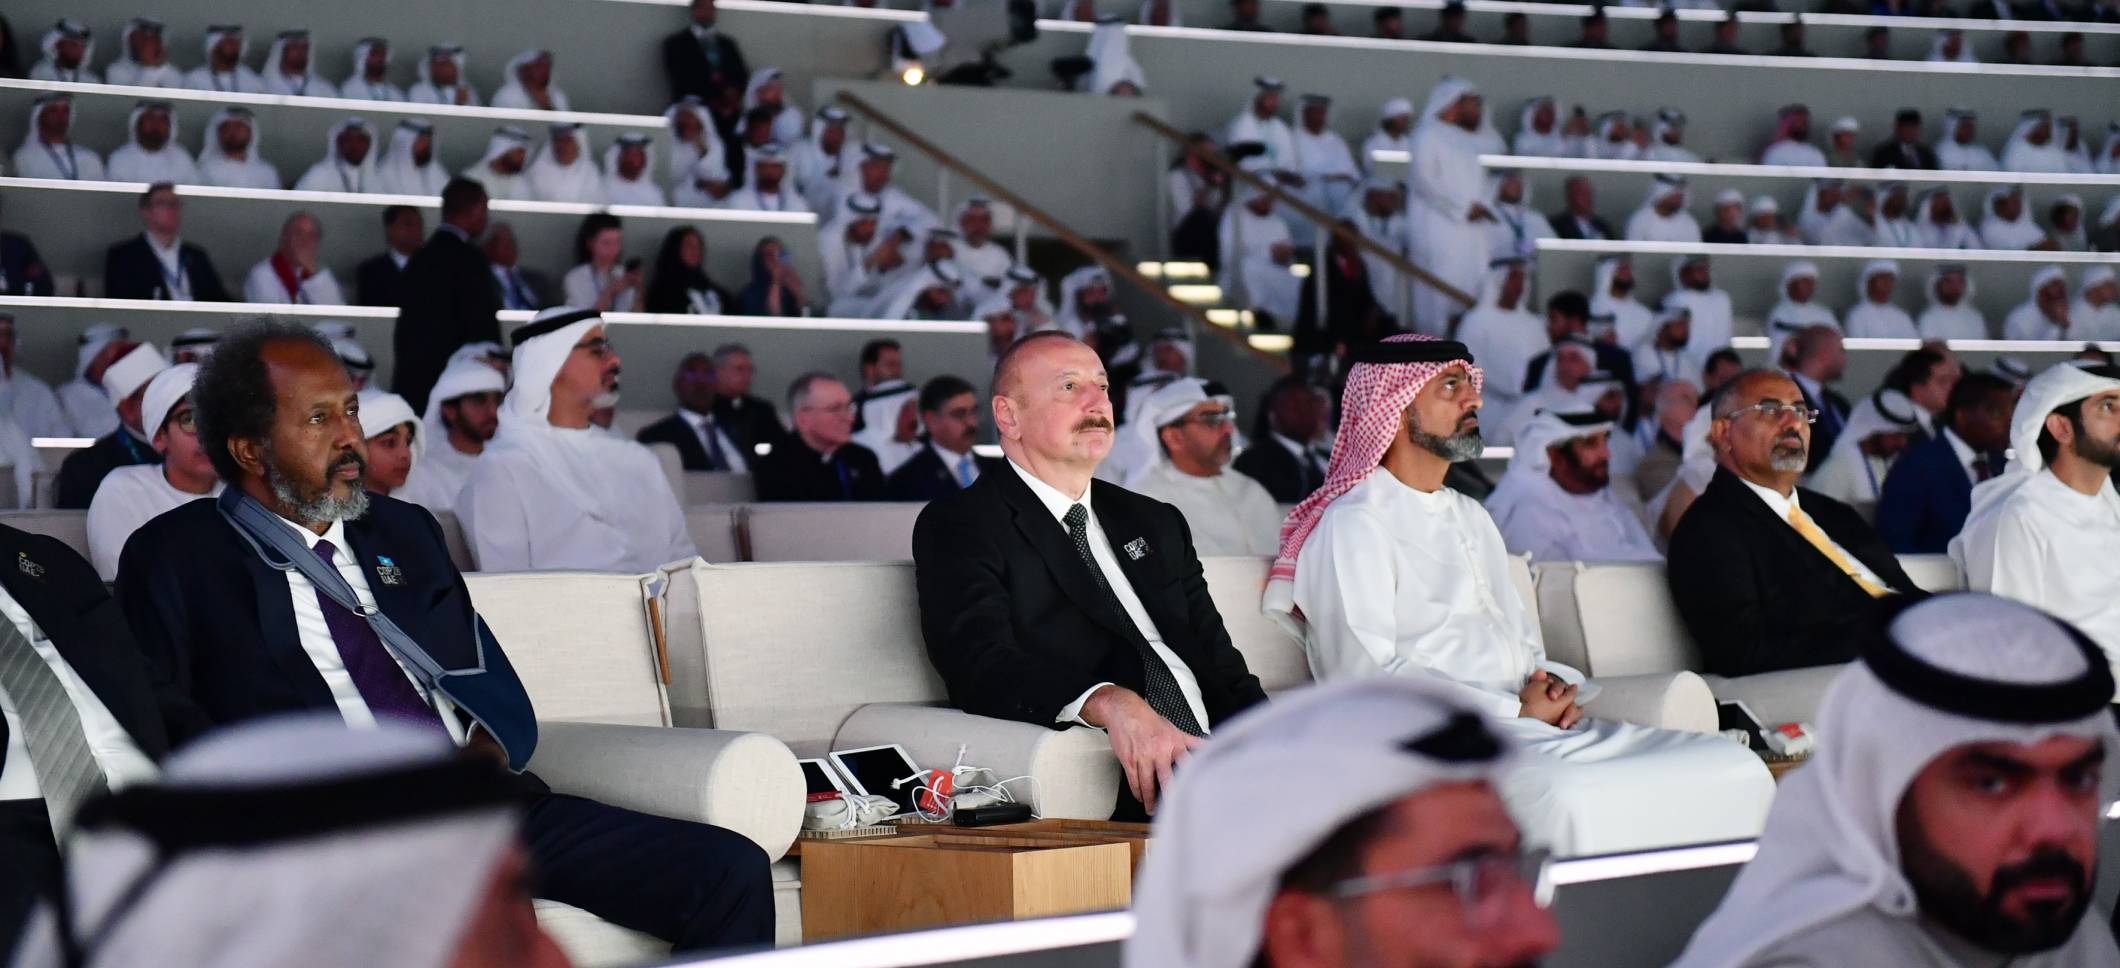 В Дубае проходит мероприятие по случаю Национального дня Объединенных Арабских Эмиратов  В мероприятии принимает участие Ильхам Алиев